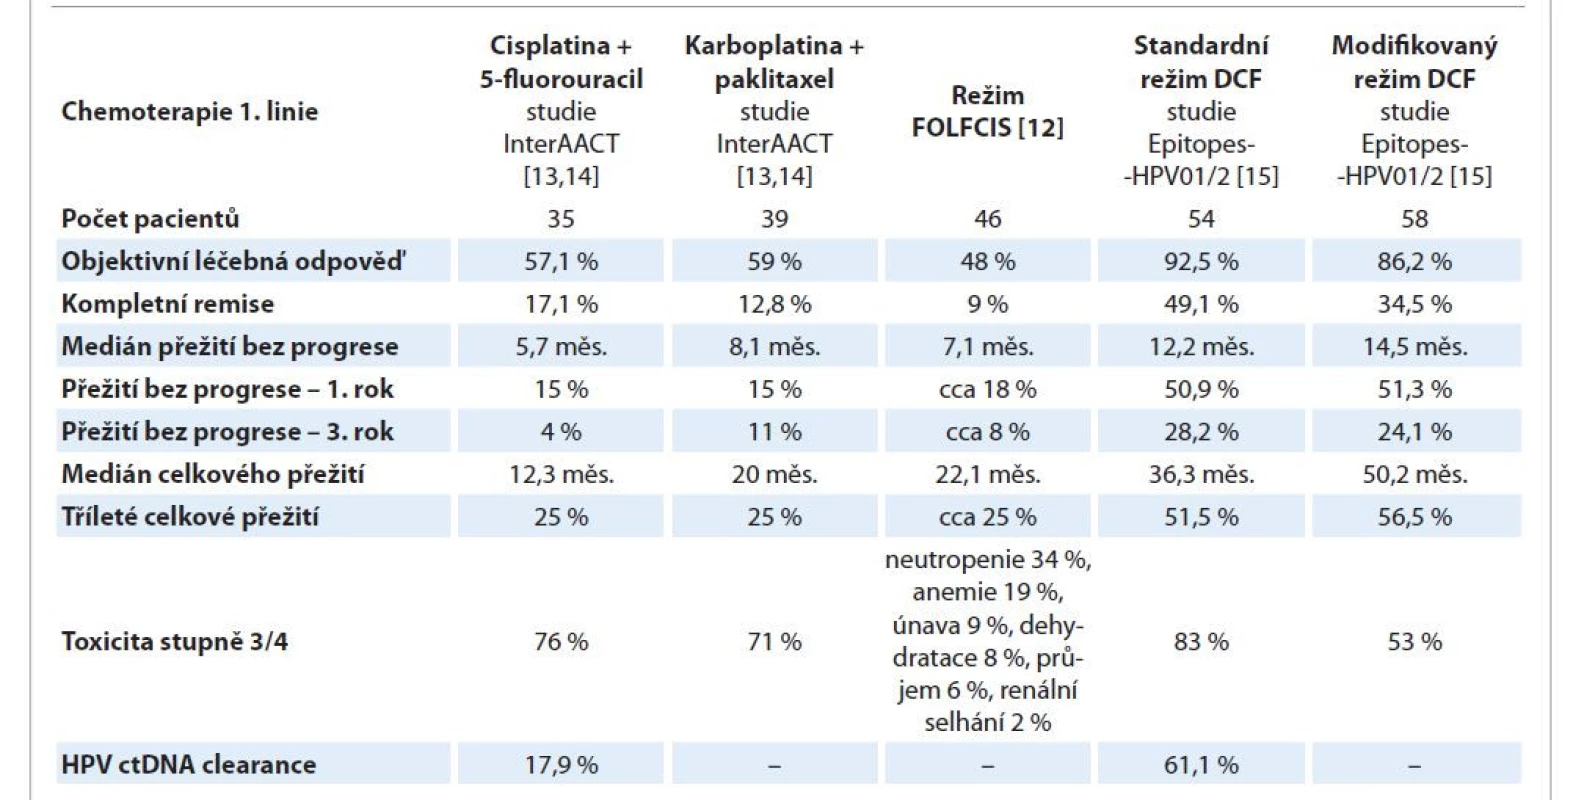 Srovnání klinických studií paliativních režimů CHT 1. linie u dlaždicového análního karcinomu (podrobnější vysvětlení
v textu).